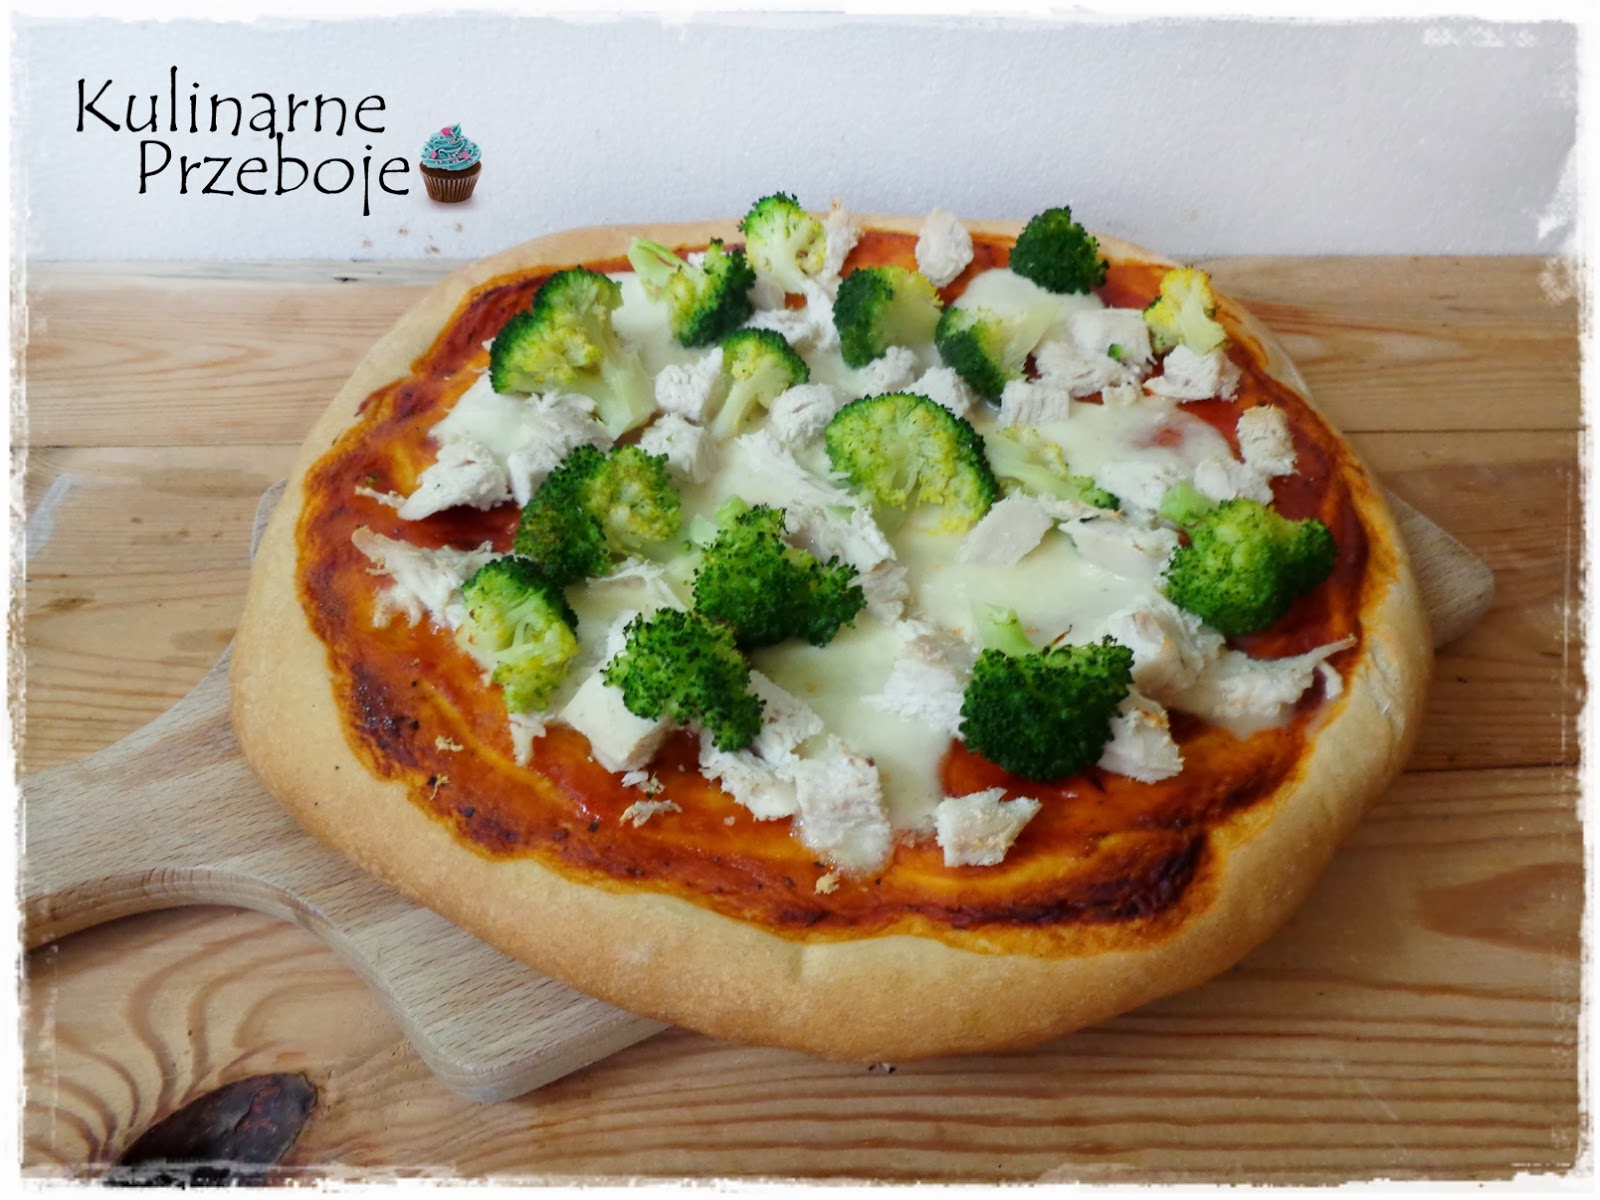 Pizza pollo con broccoli